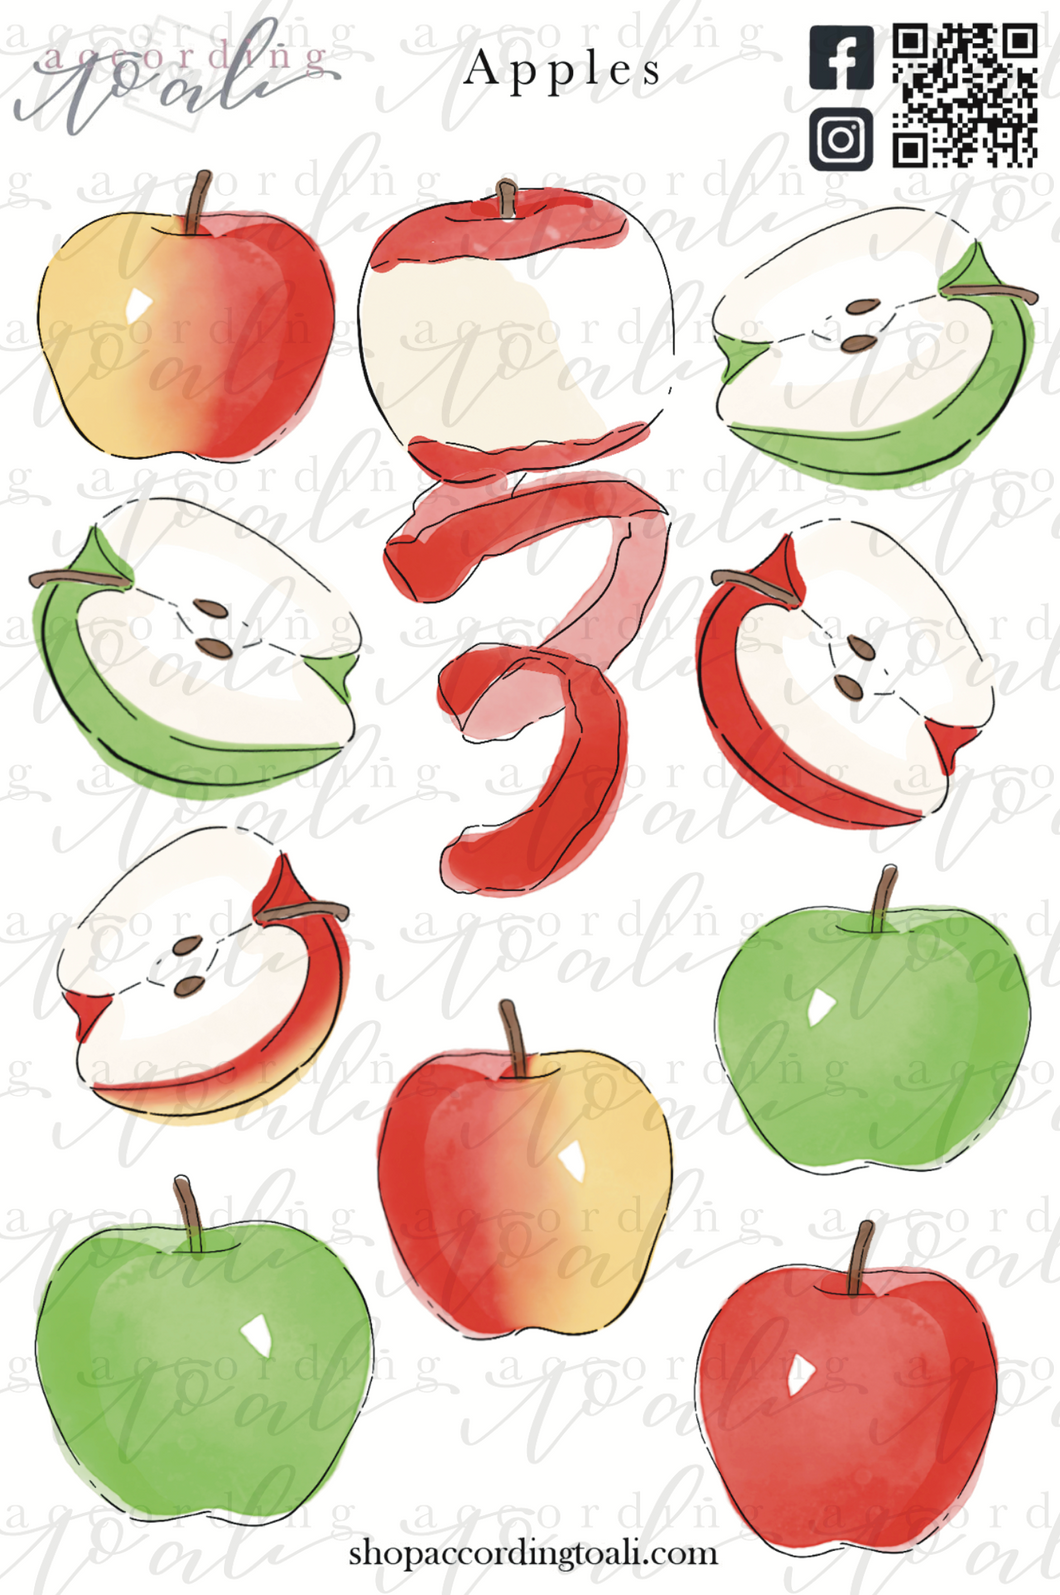 Apples Sticker Sheet